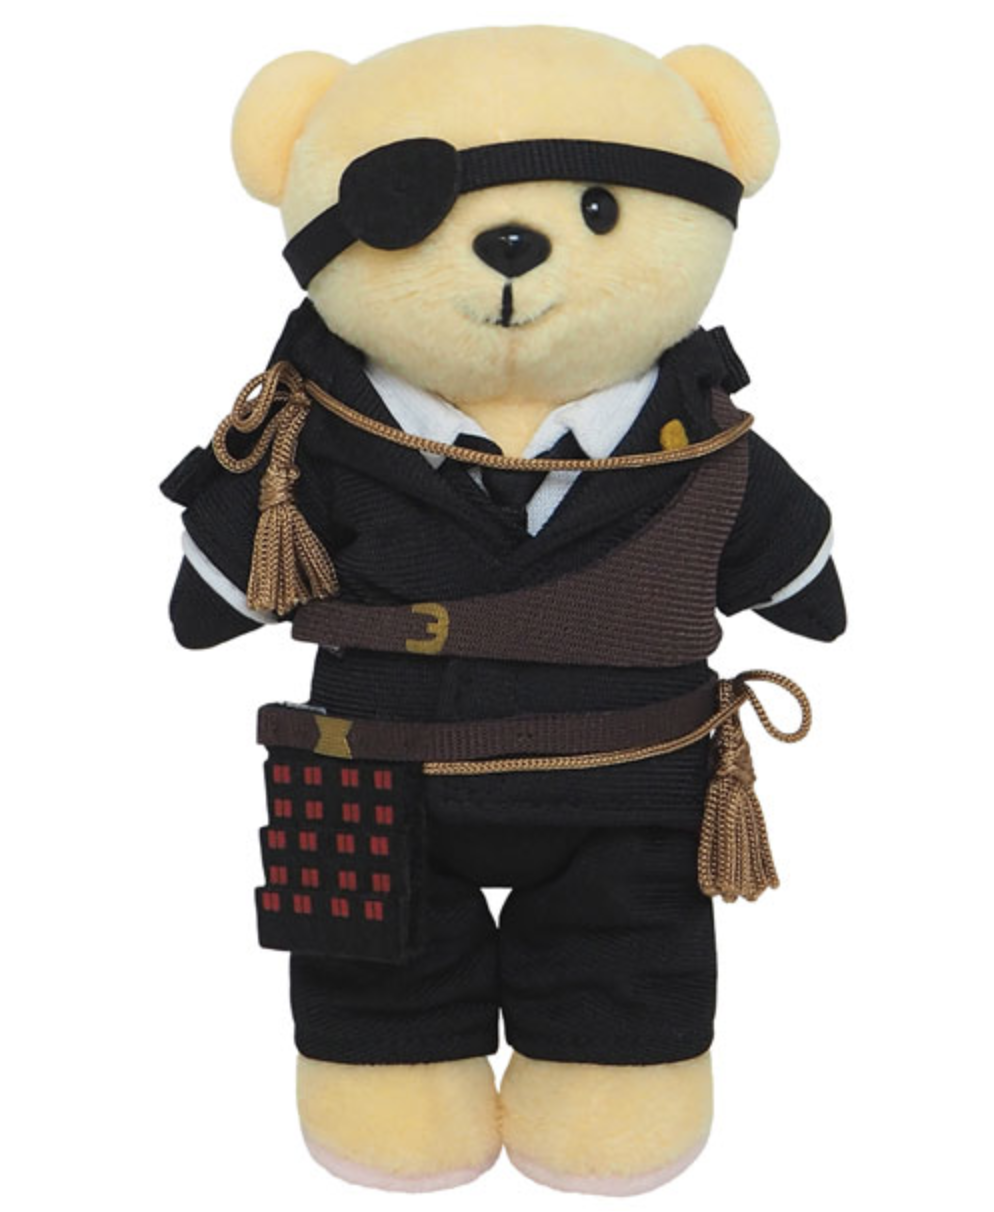 teddy bear dolls buy online